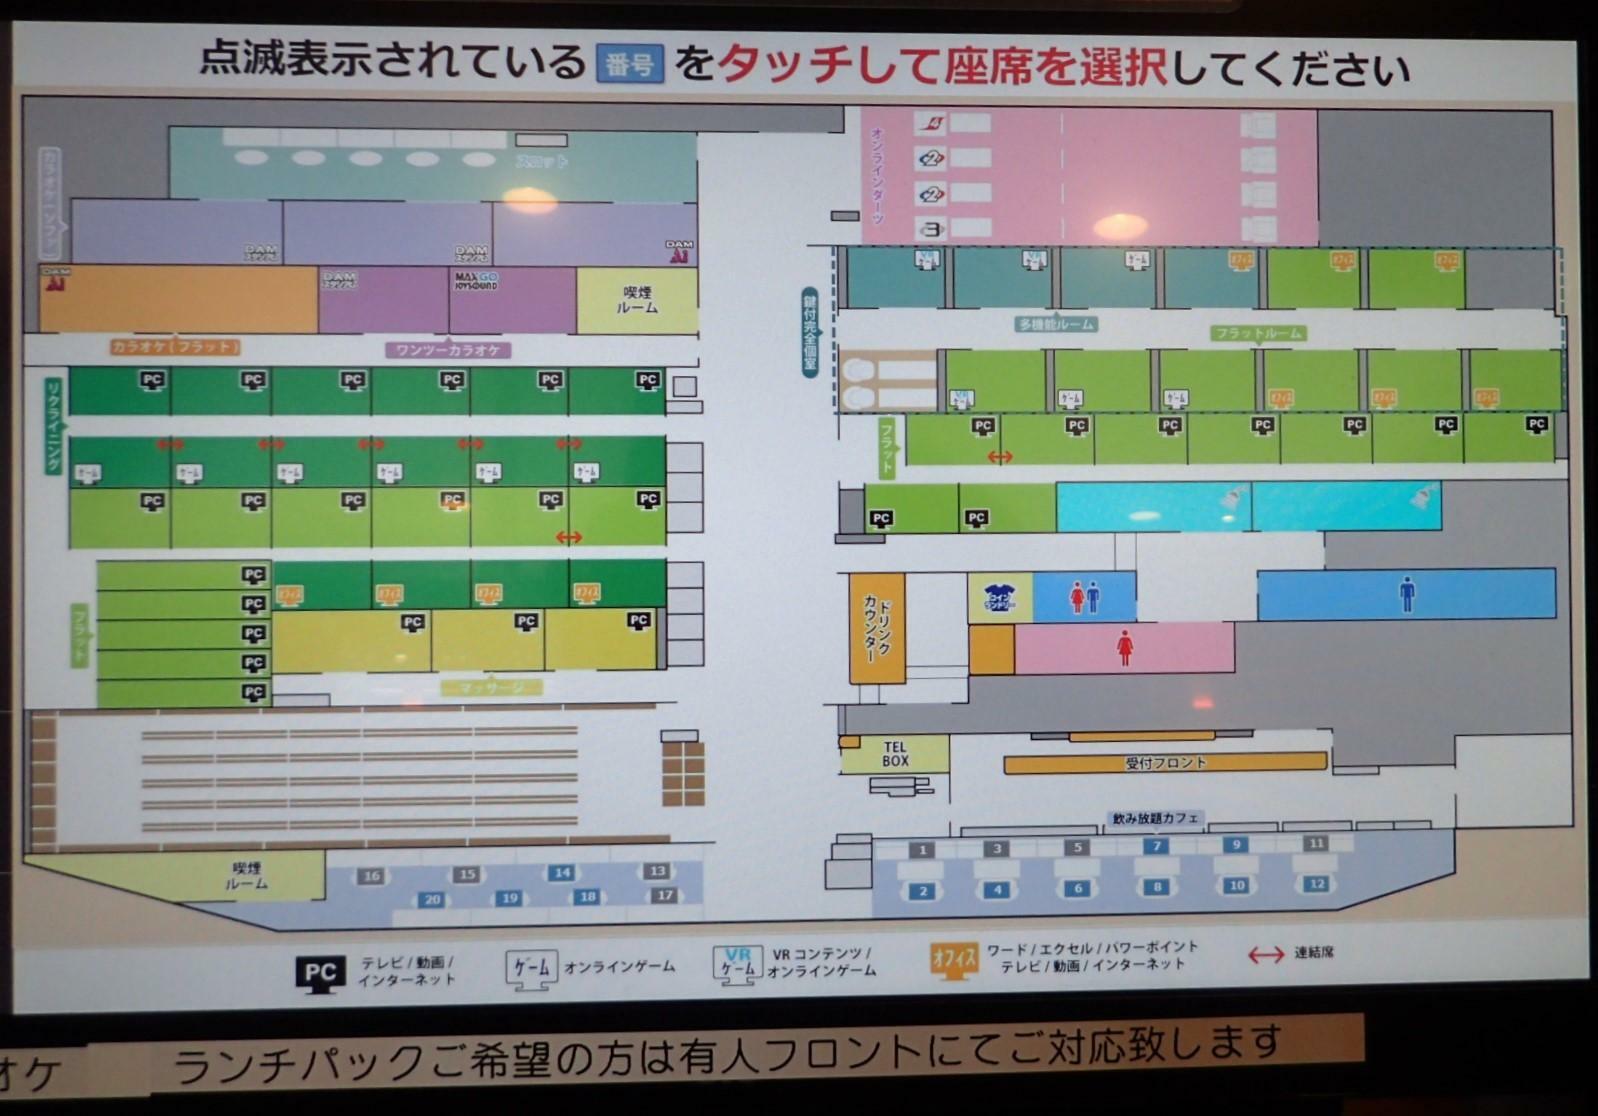 座席の選択画面（店内マップ）